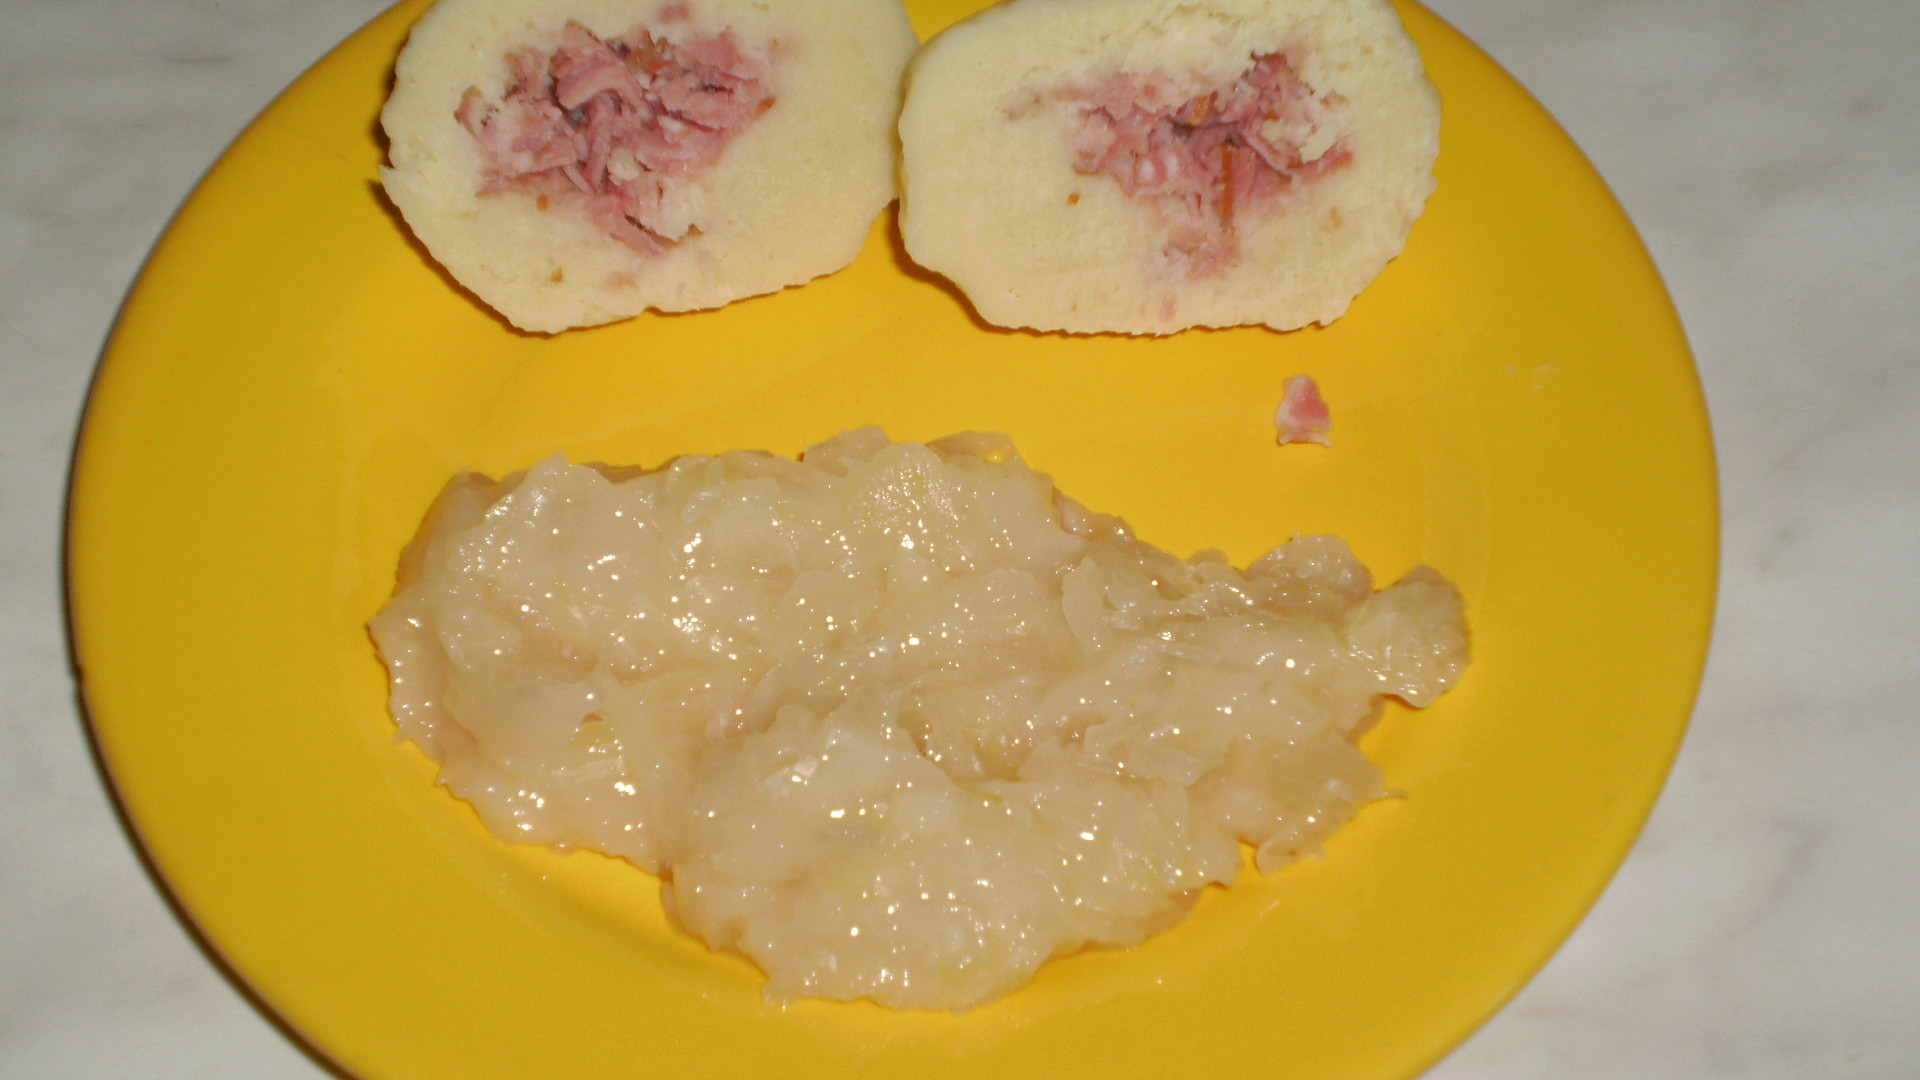 Bramborové knedlíky (z bramborové kaše) plněné uzenou krkovicí